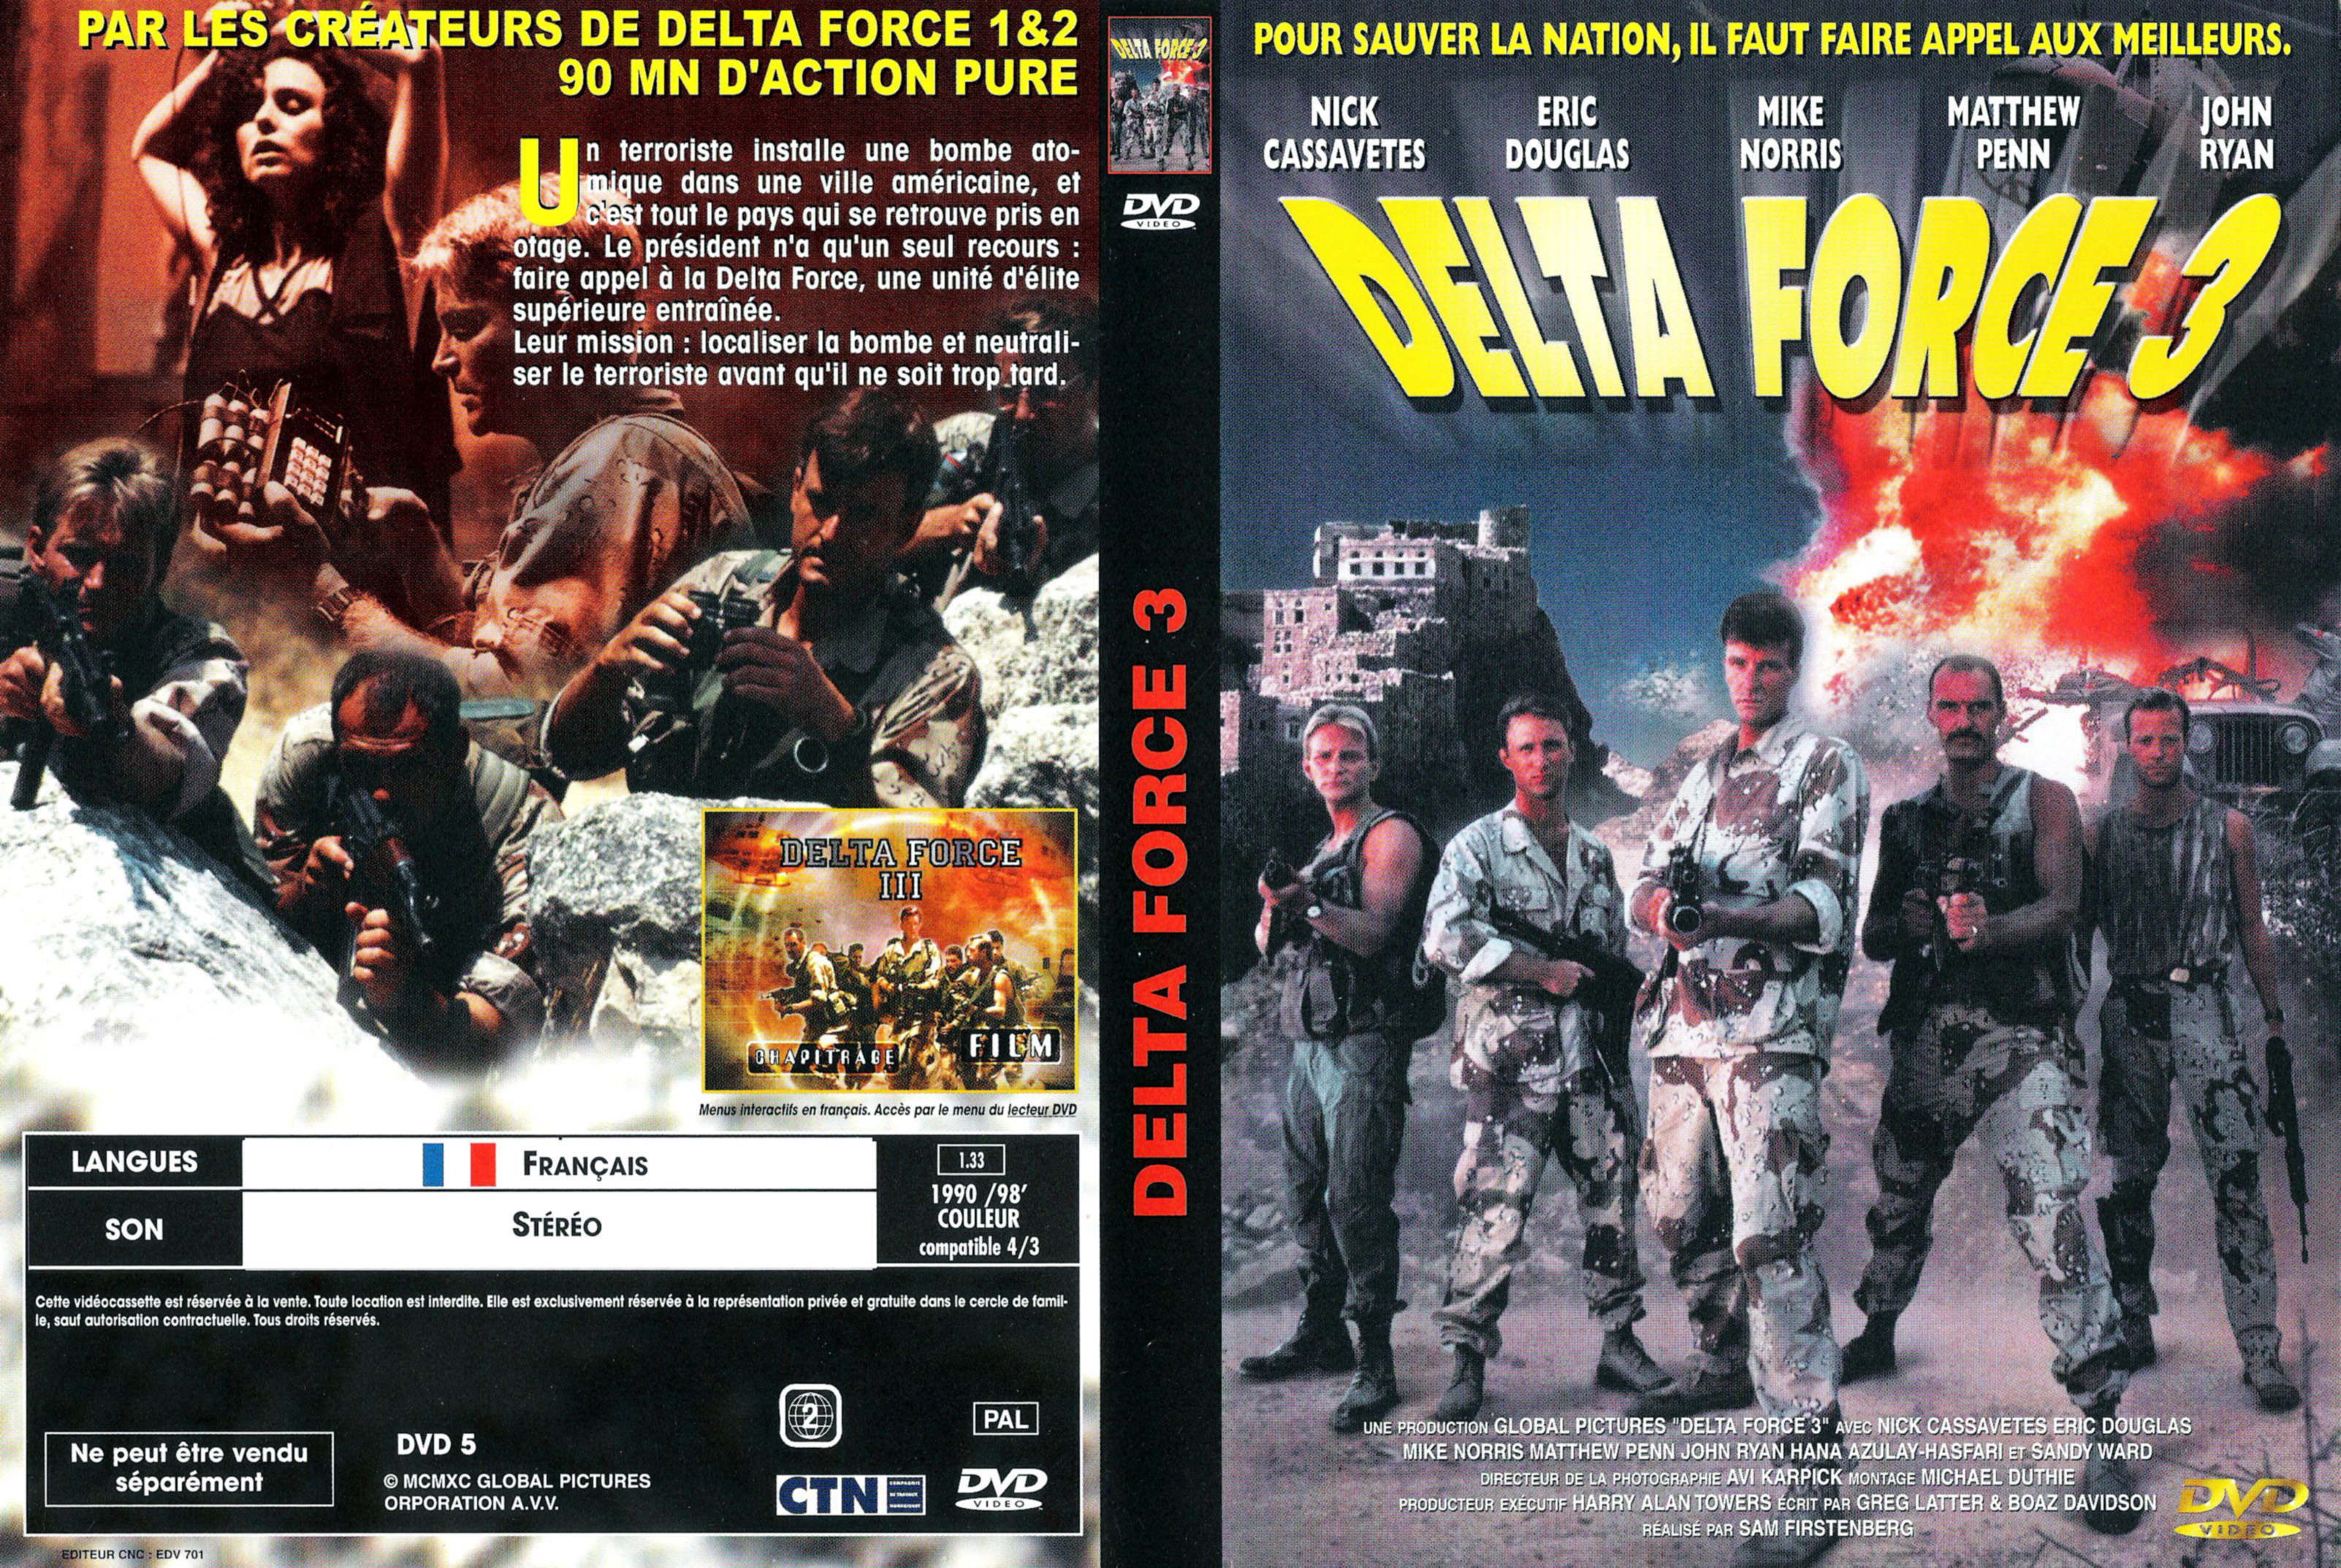 Jaquette DVD Delta force 3 v2